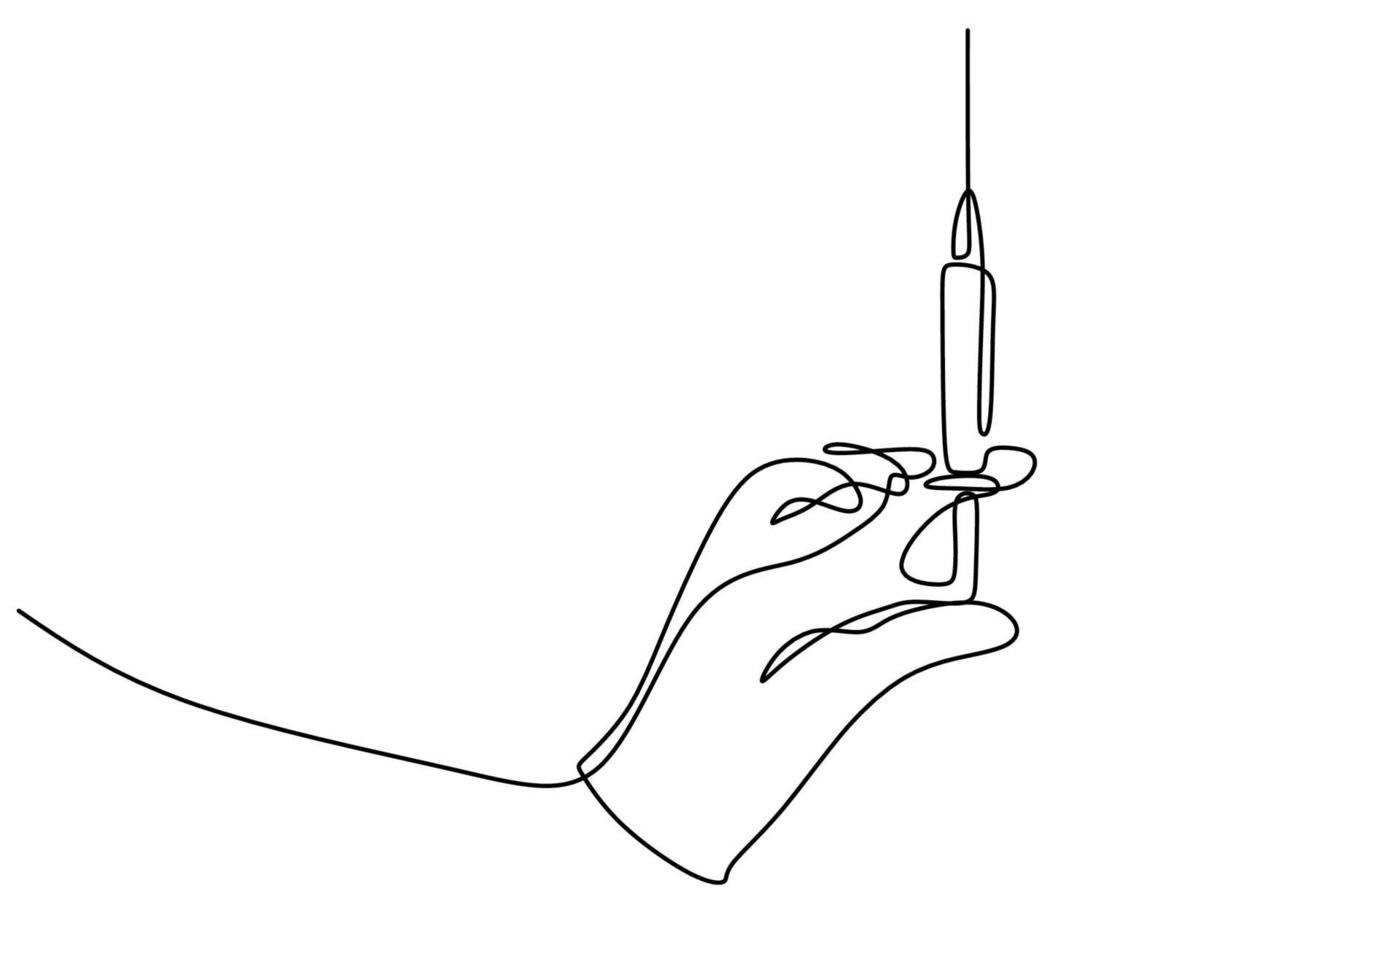 continu een lijntekening van een hand met injectie. medische apparatuur of hulpmiddelen illustratie hand getrokken. een hand met een naald voor de coronavaccinentest die op witte achtergrond wordt geïsoleerd. vector